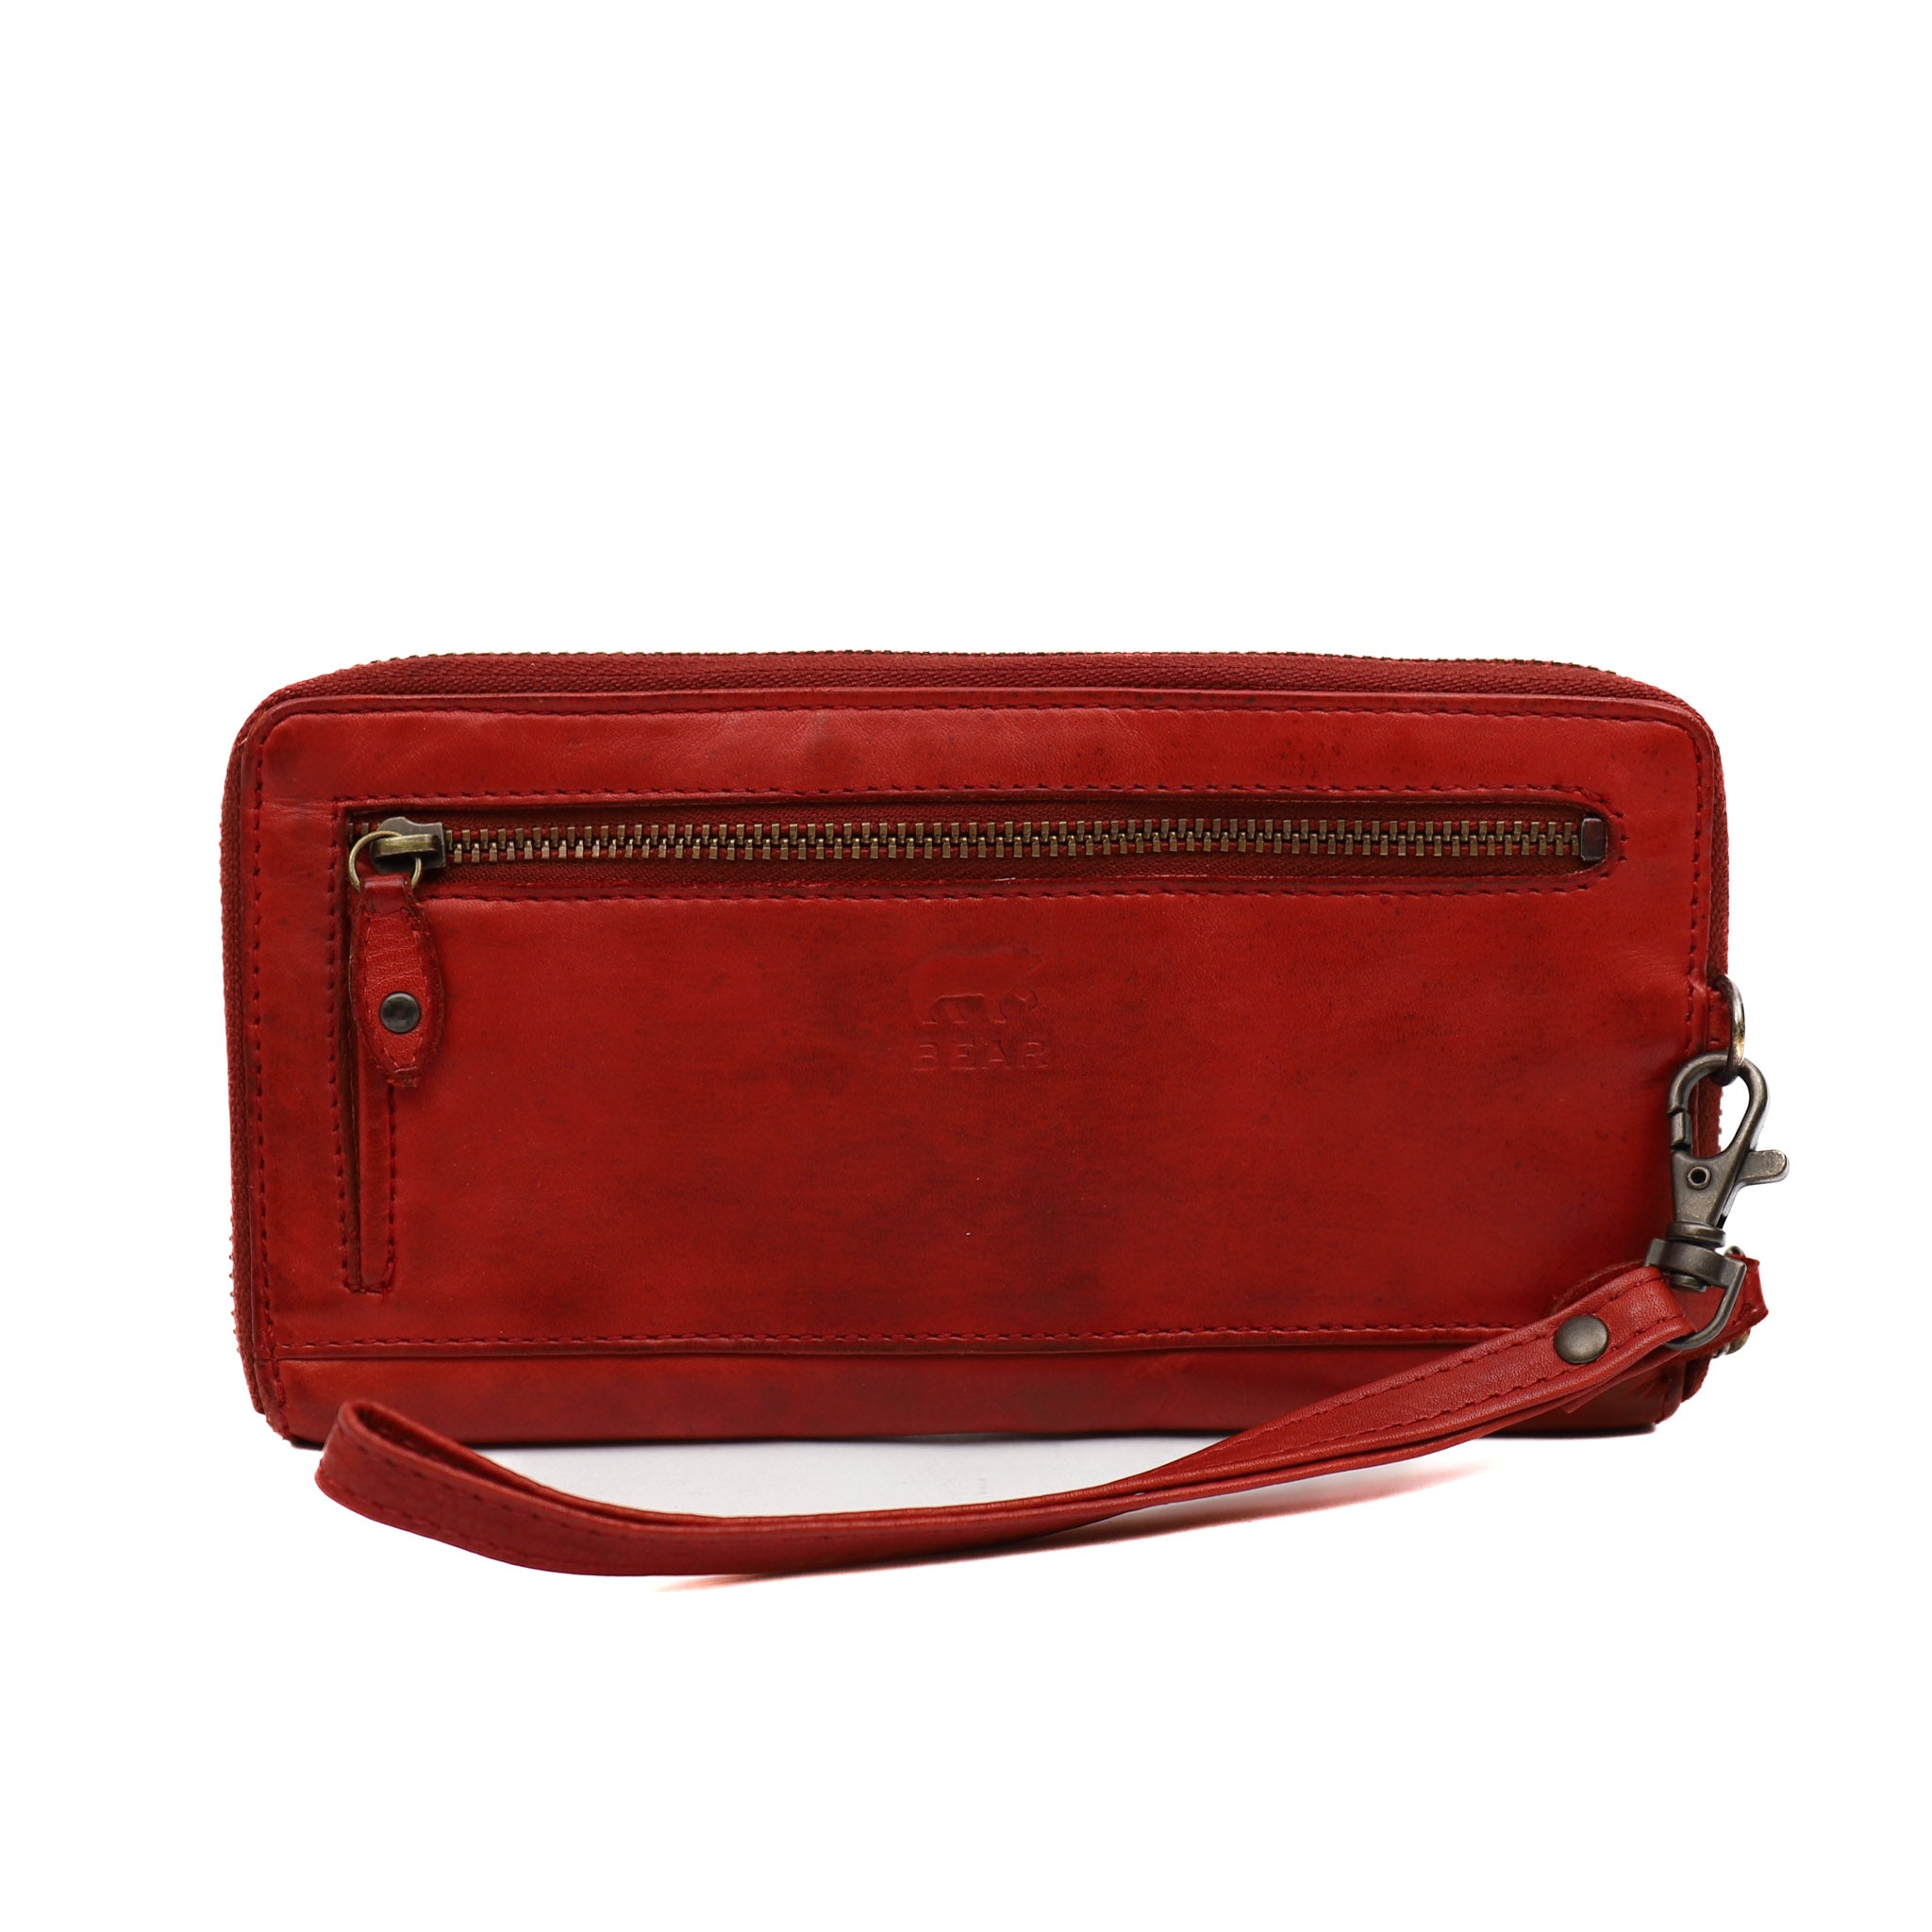 Zipper wallet 'Sofie' red - CL 15882